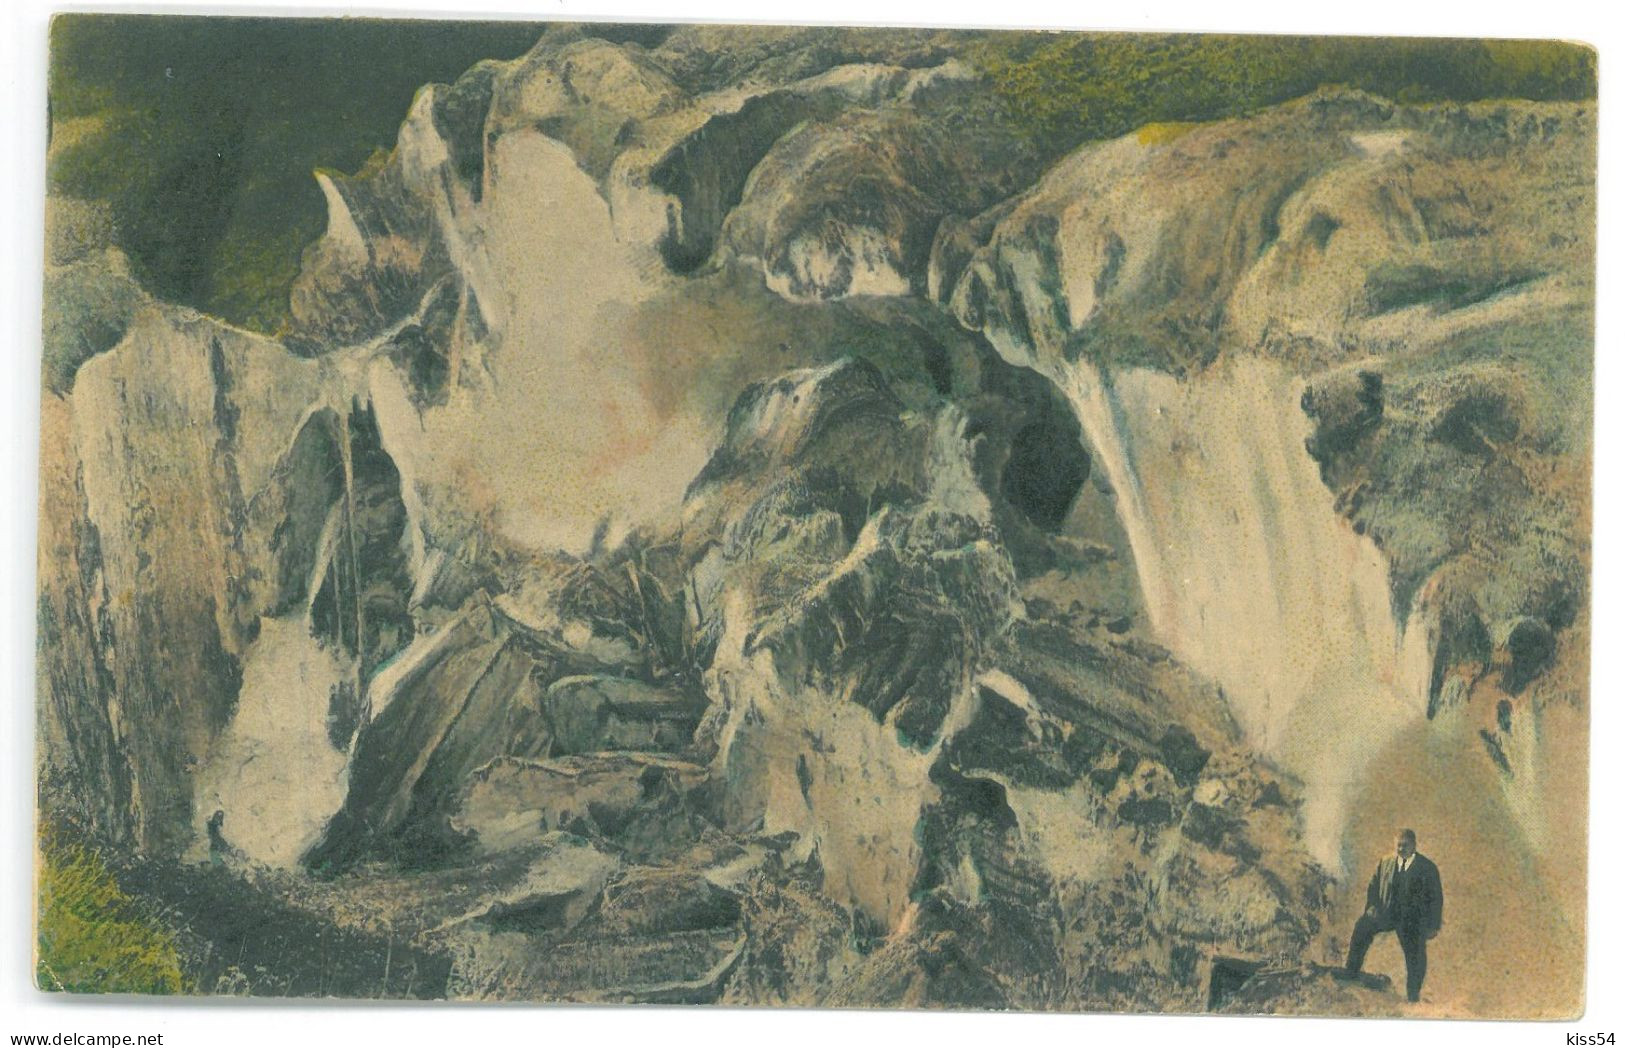 RO - 25017 OCNA-MURES, Alba, Salt Mountain, Romania - Old Postcard - Used - 1917 - Rumänien